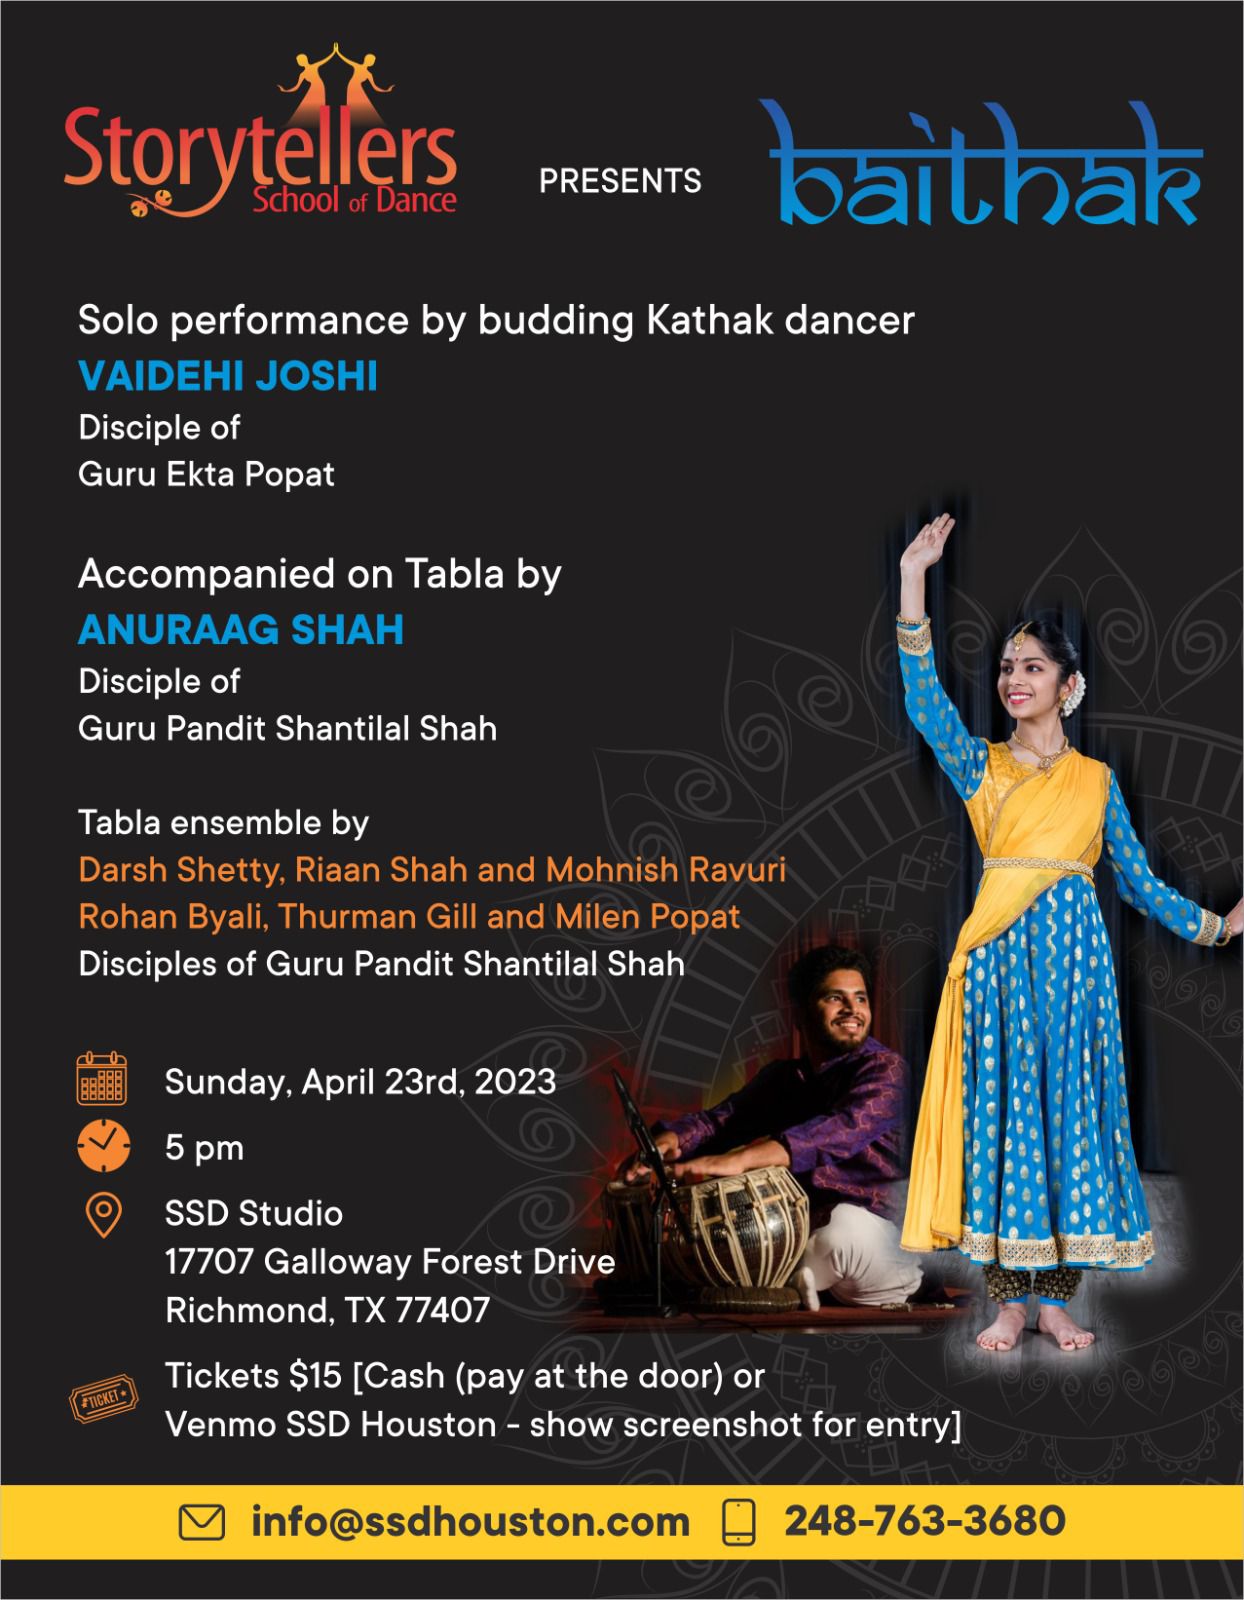 Flyer for Storyteller's School of Dance Baithak program